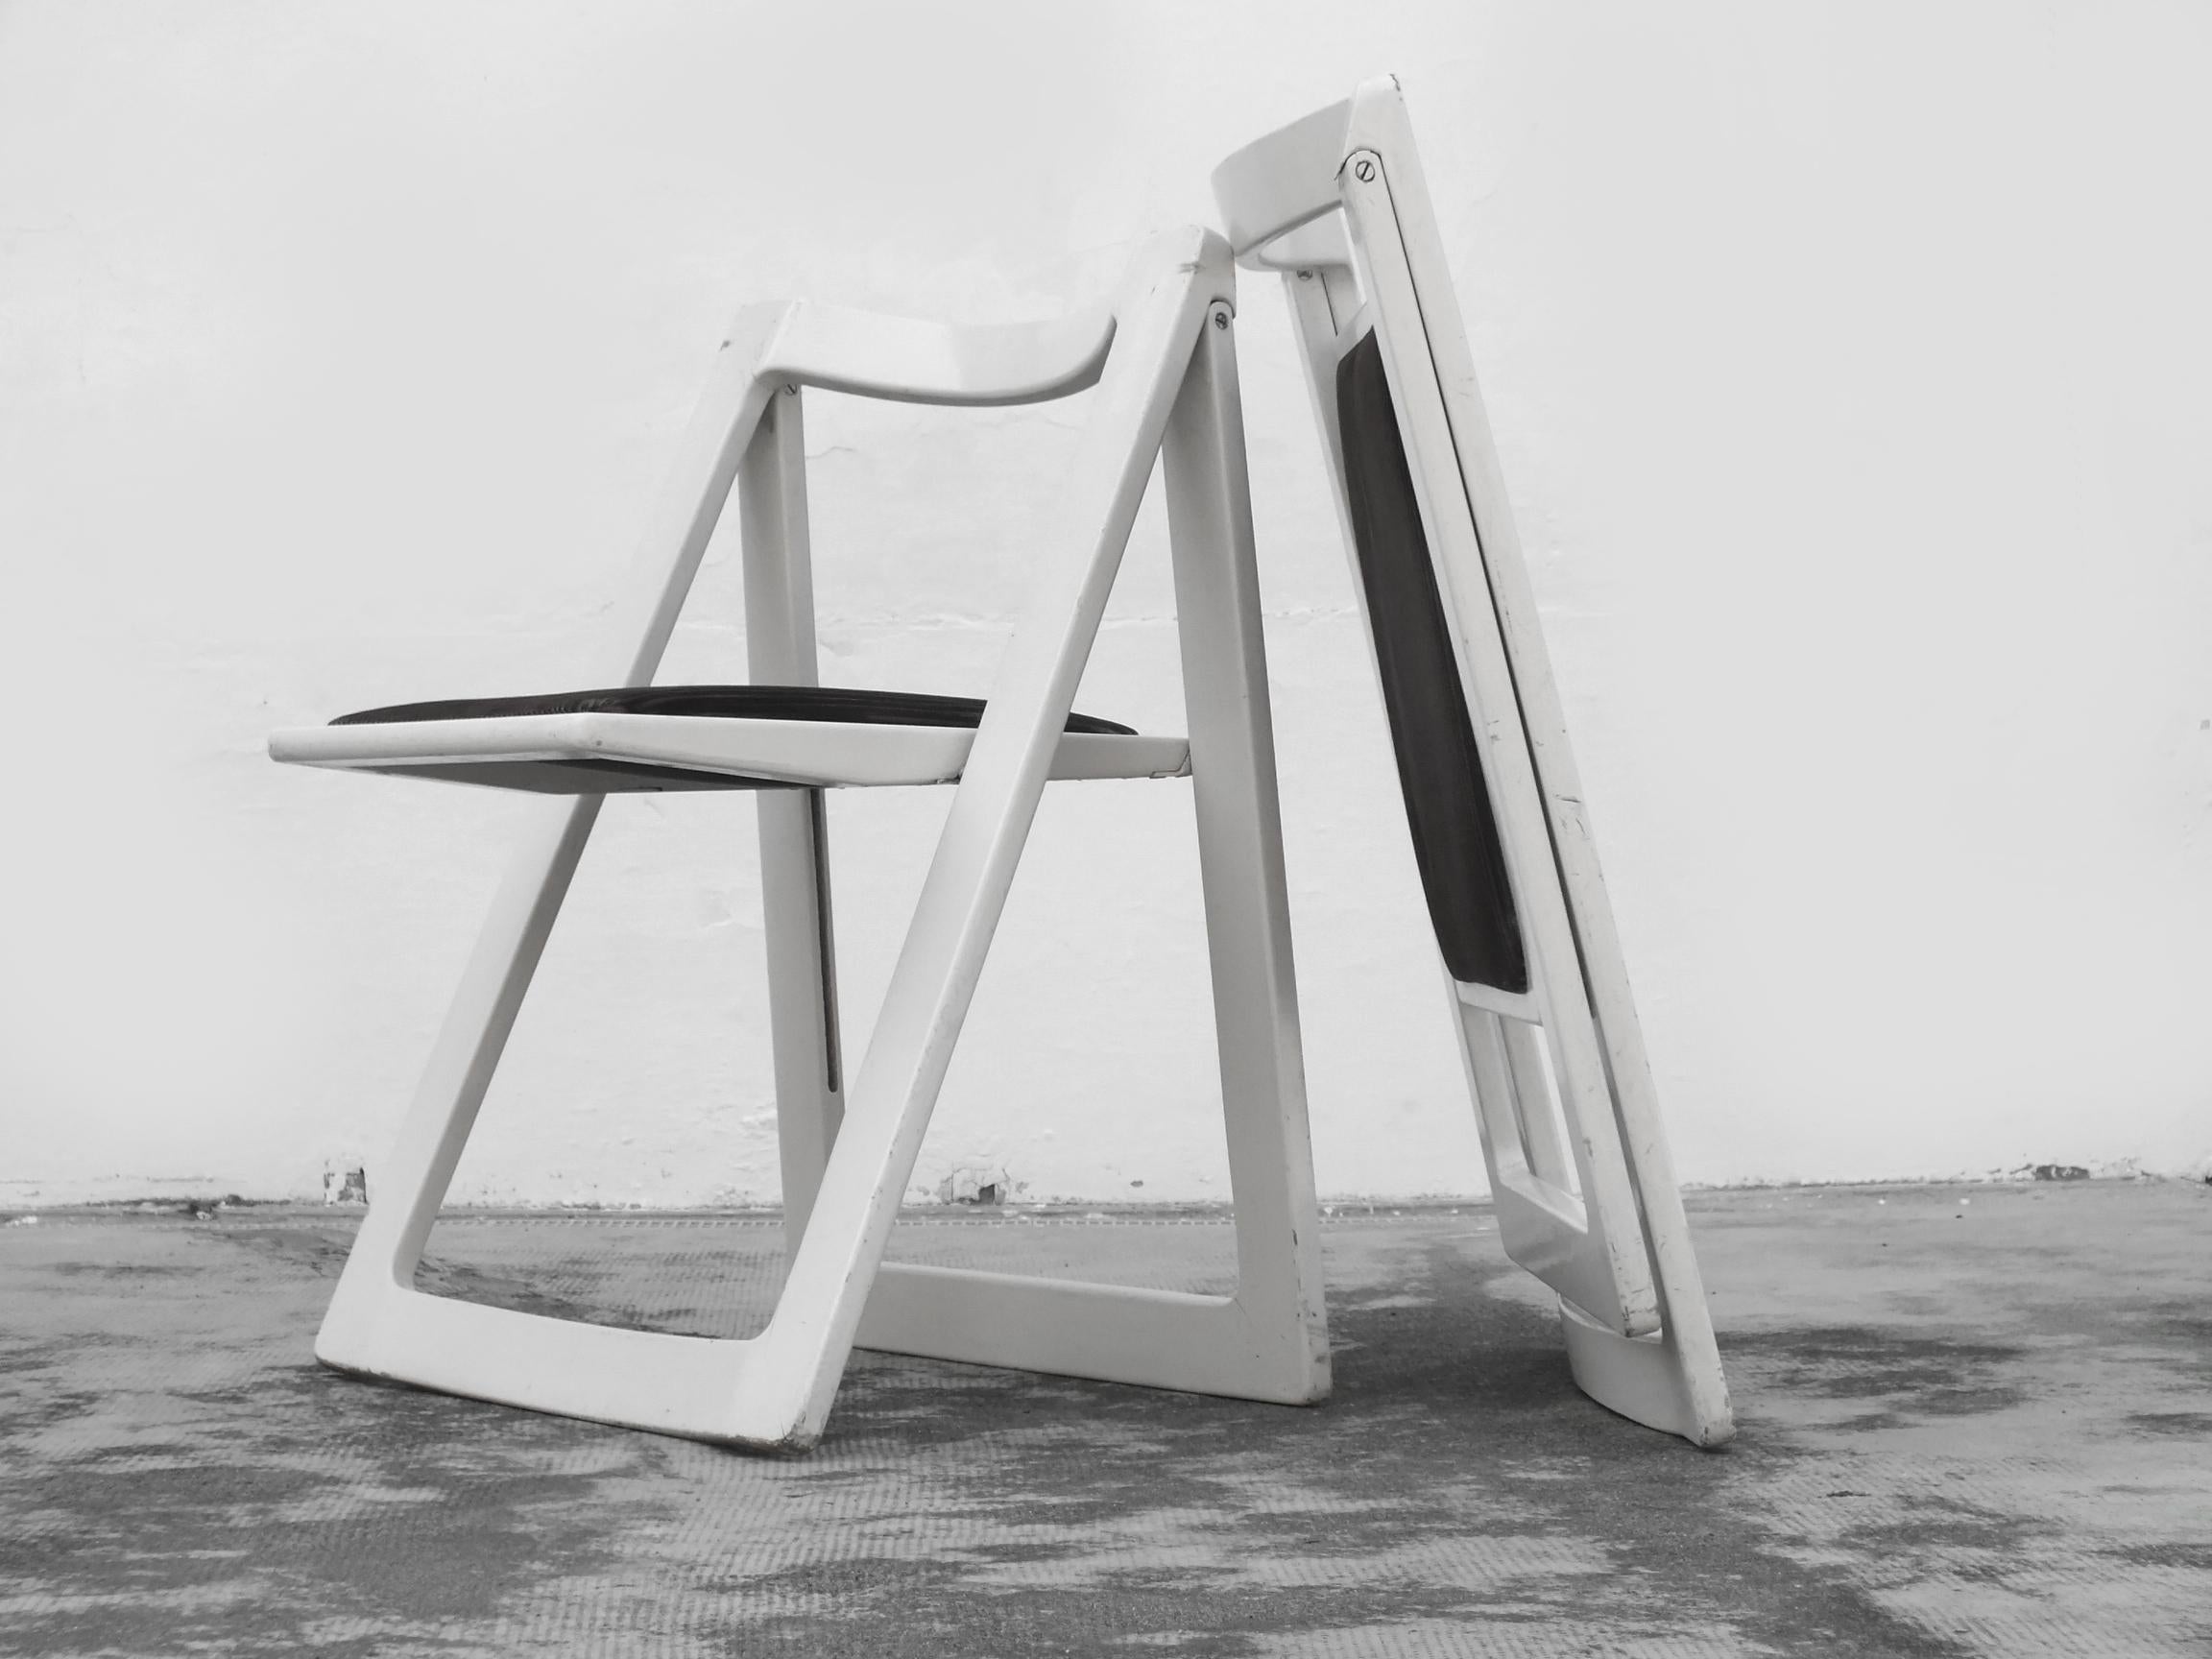 Jacober Aldo und D'Aniello Design Bazzani Itaky in Jahren '70 zwei Trieste Stühle seltene Version Holz mit Samt Sitz

sehr gute solide Struktur aber mit den warnish, die mehr Zeichen des Gebrauches haben, Samt gut